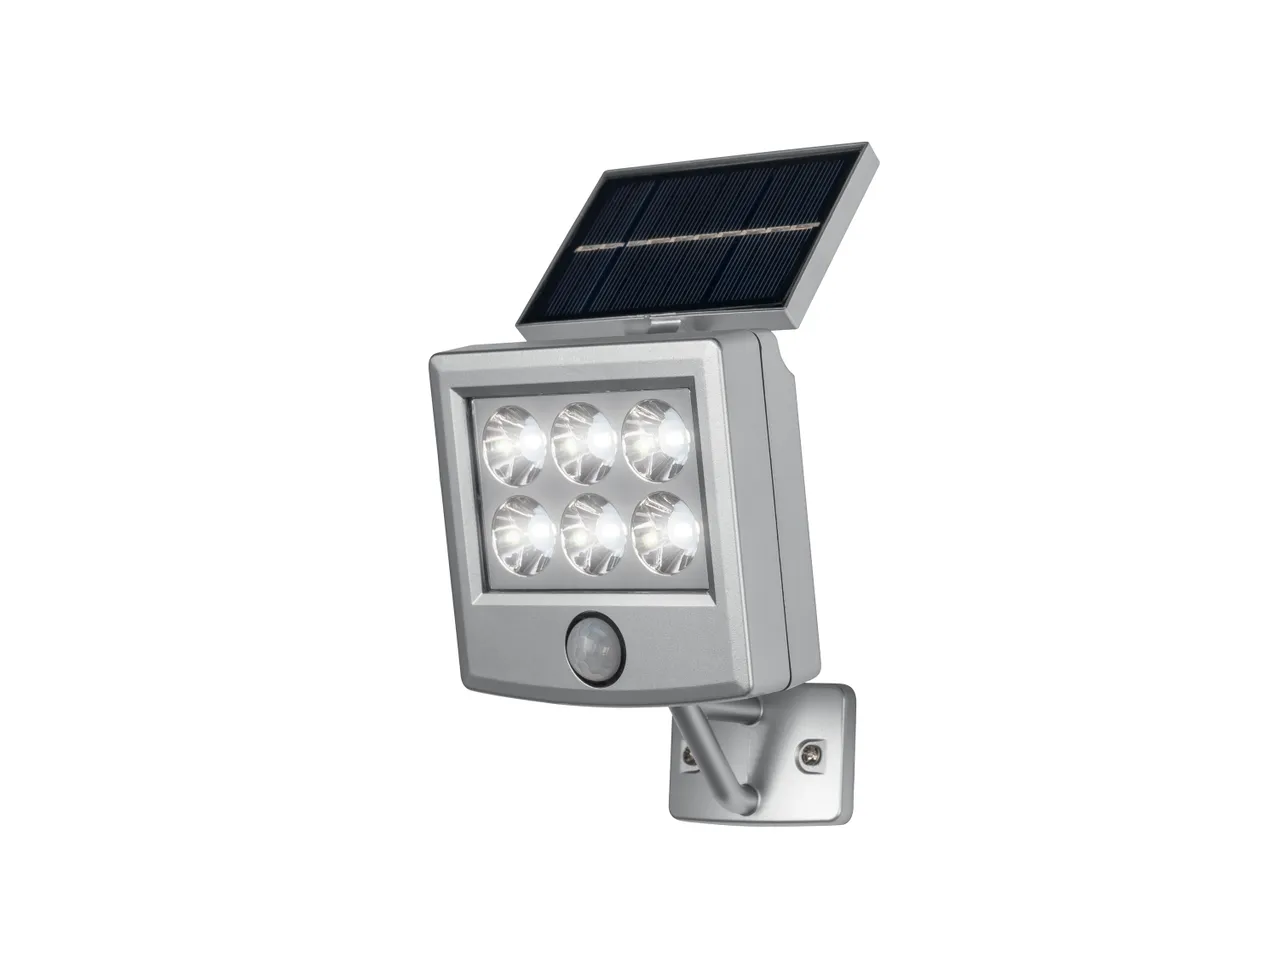 Faro LED ad energia solare con sensore , prezzo 9,99 EUR 
Faro LED ad energia solare ...